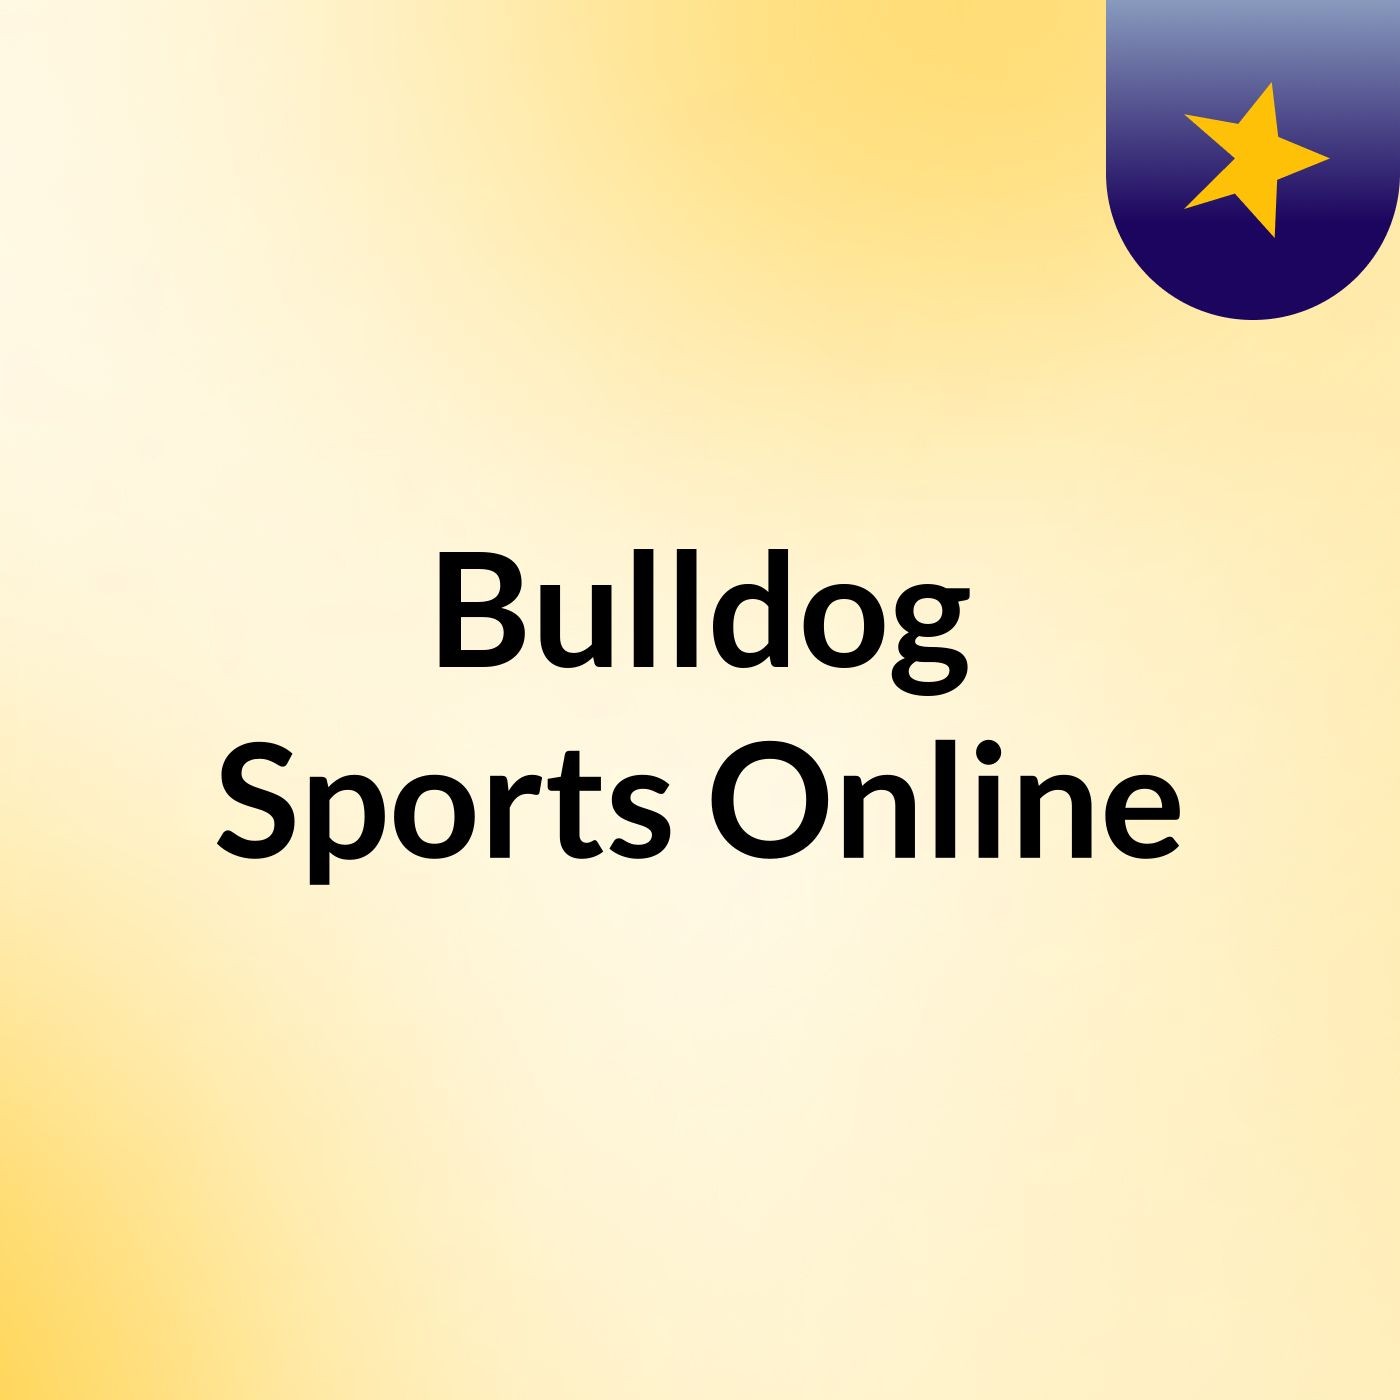 bulldog sports